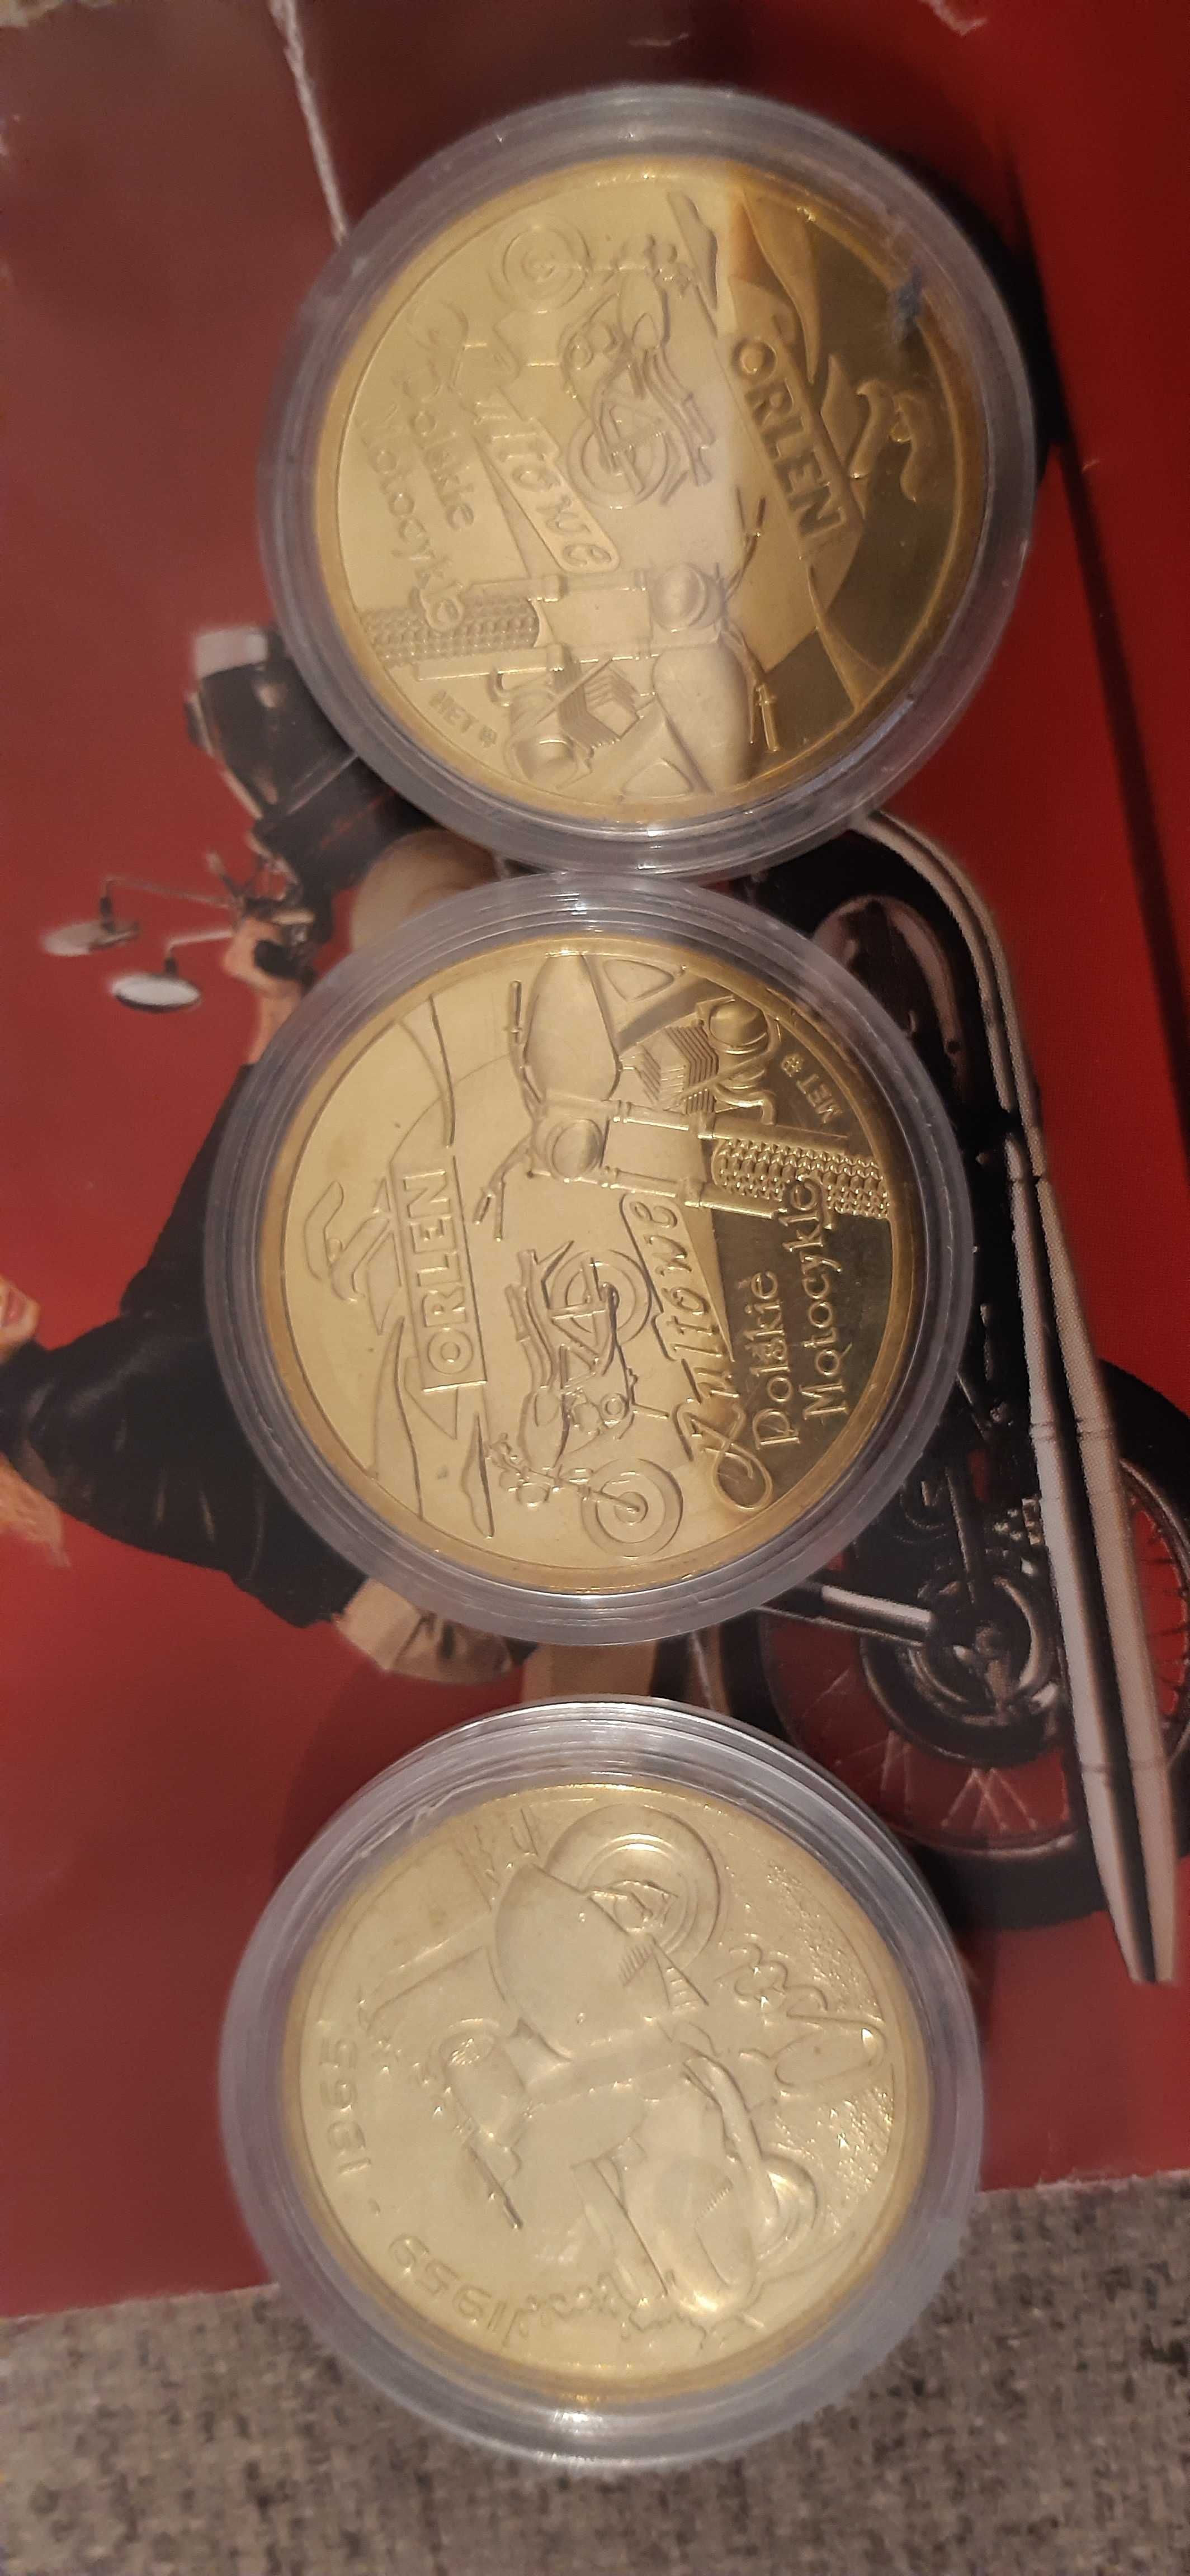 3 stare medale monety okolicznościowe ikony polskiej motoryzacji